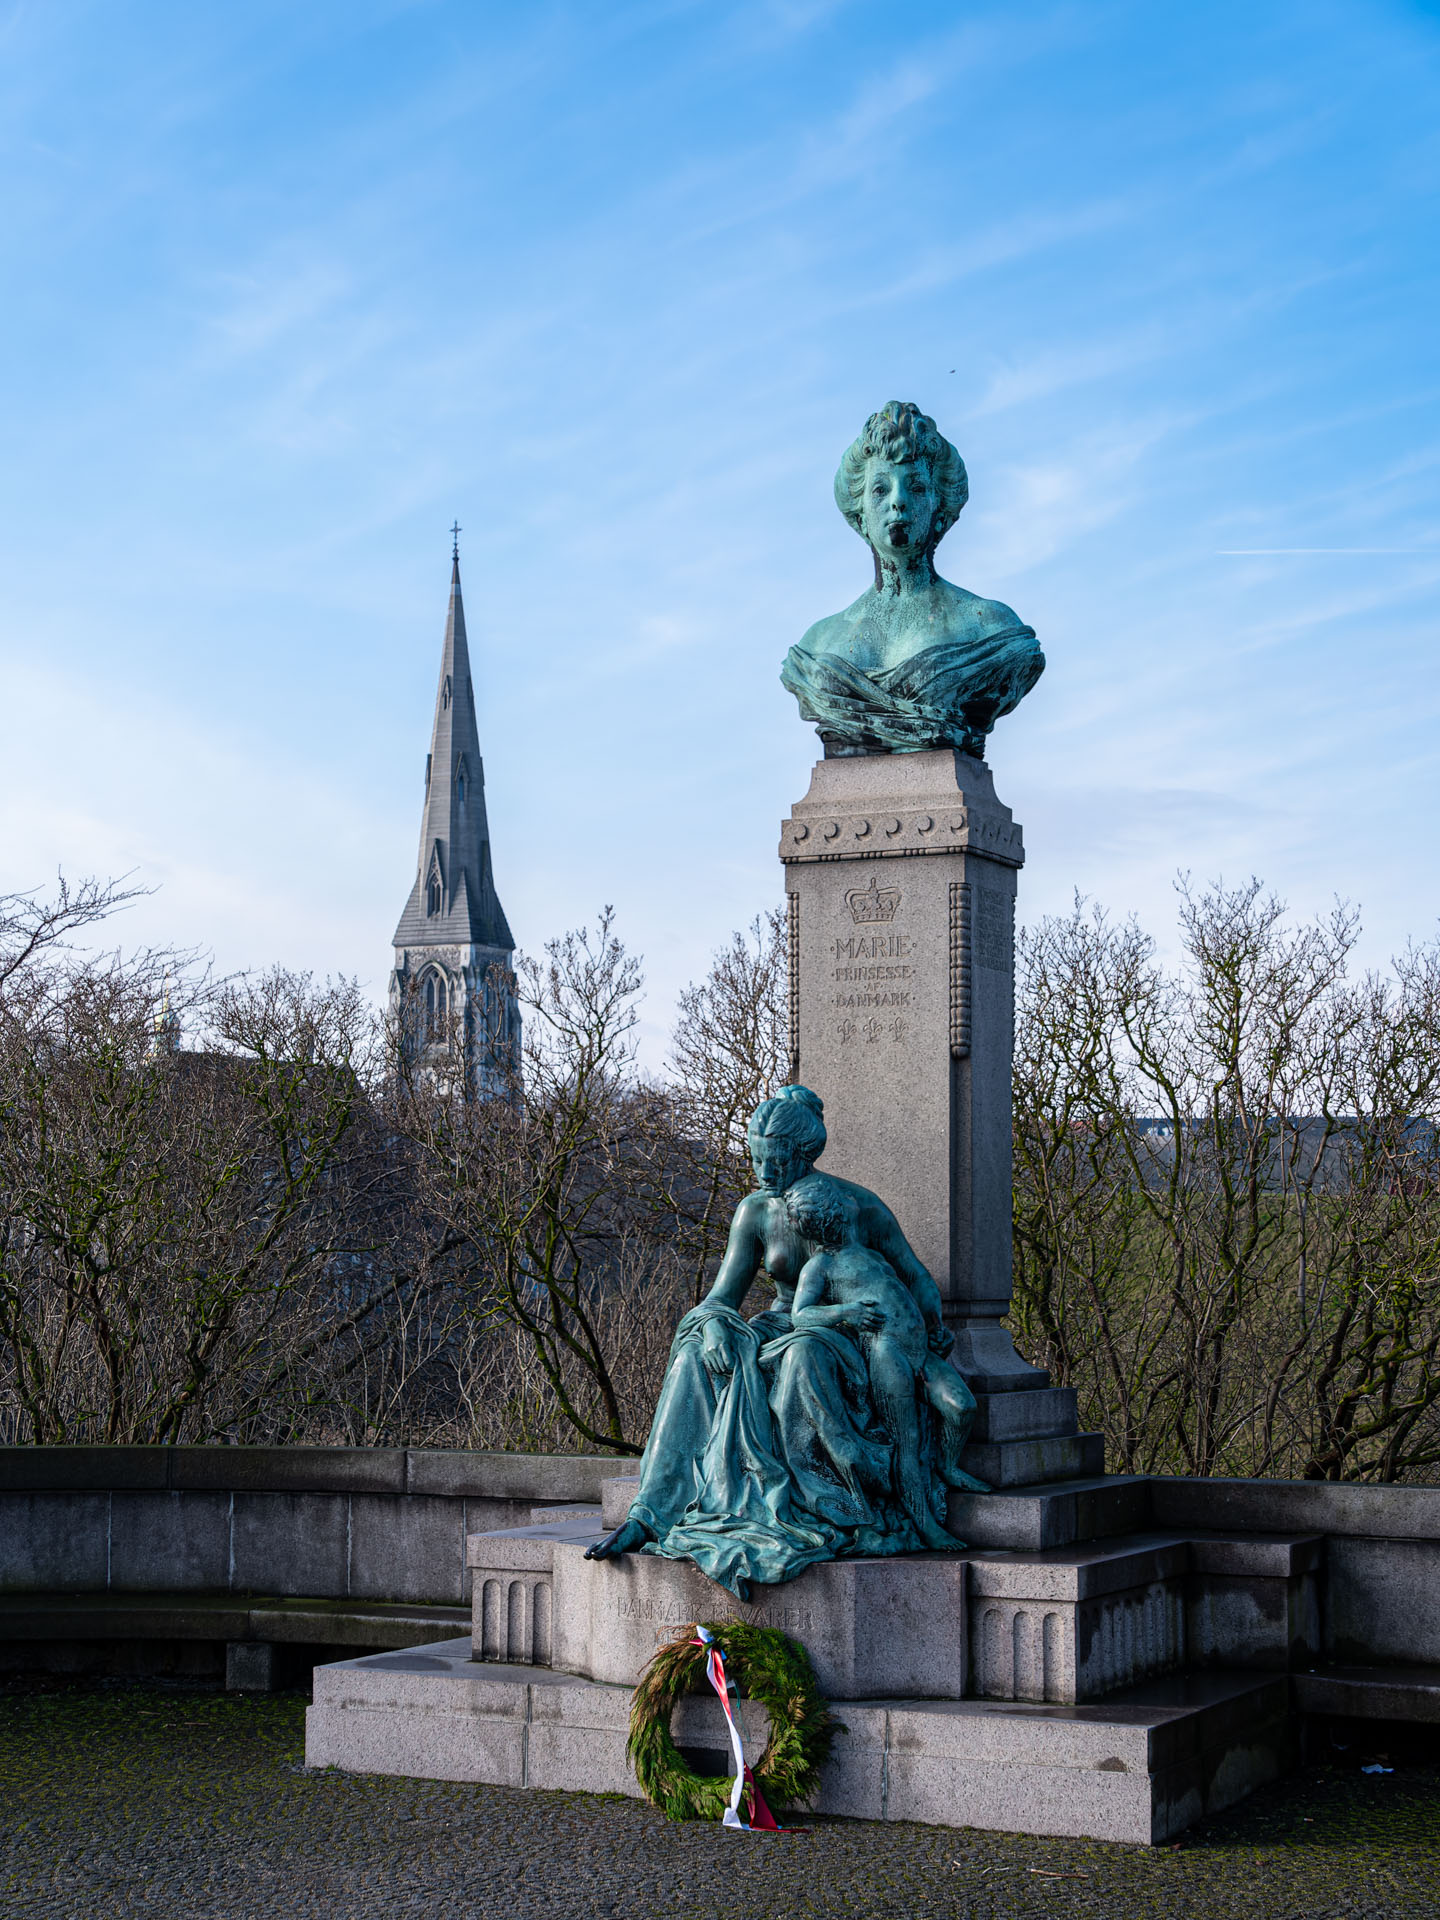 Statues in Copenhagen